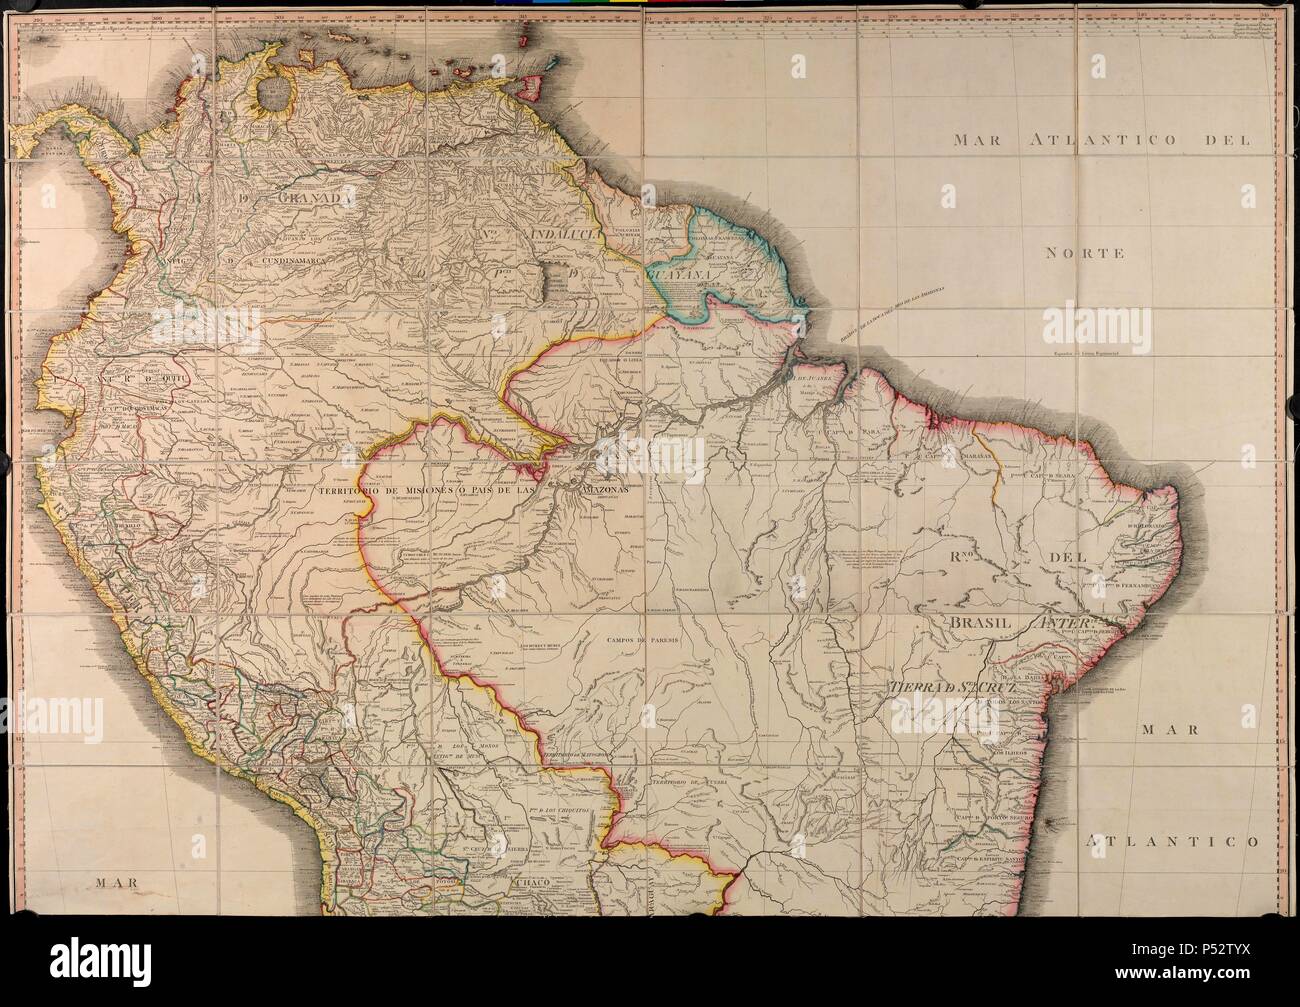 MAPA GEOGRAFICO DE AMERICA MERIDIONAL - 1799. Auteur : CRUZ CANO Y OLMEDILLA JUAN / William Faden. Emplacement : BIBLIOTECA NACIONAL-COLECCION, MADRID, ESPAGNE. Banque D'Images